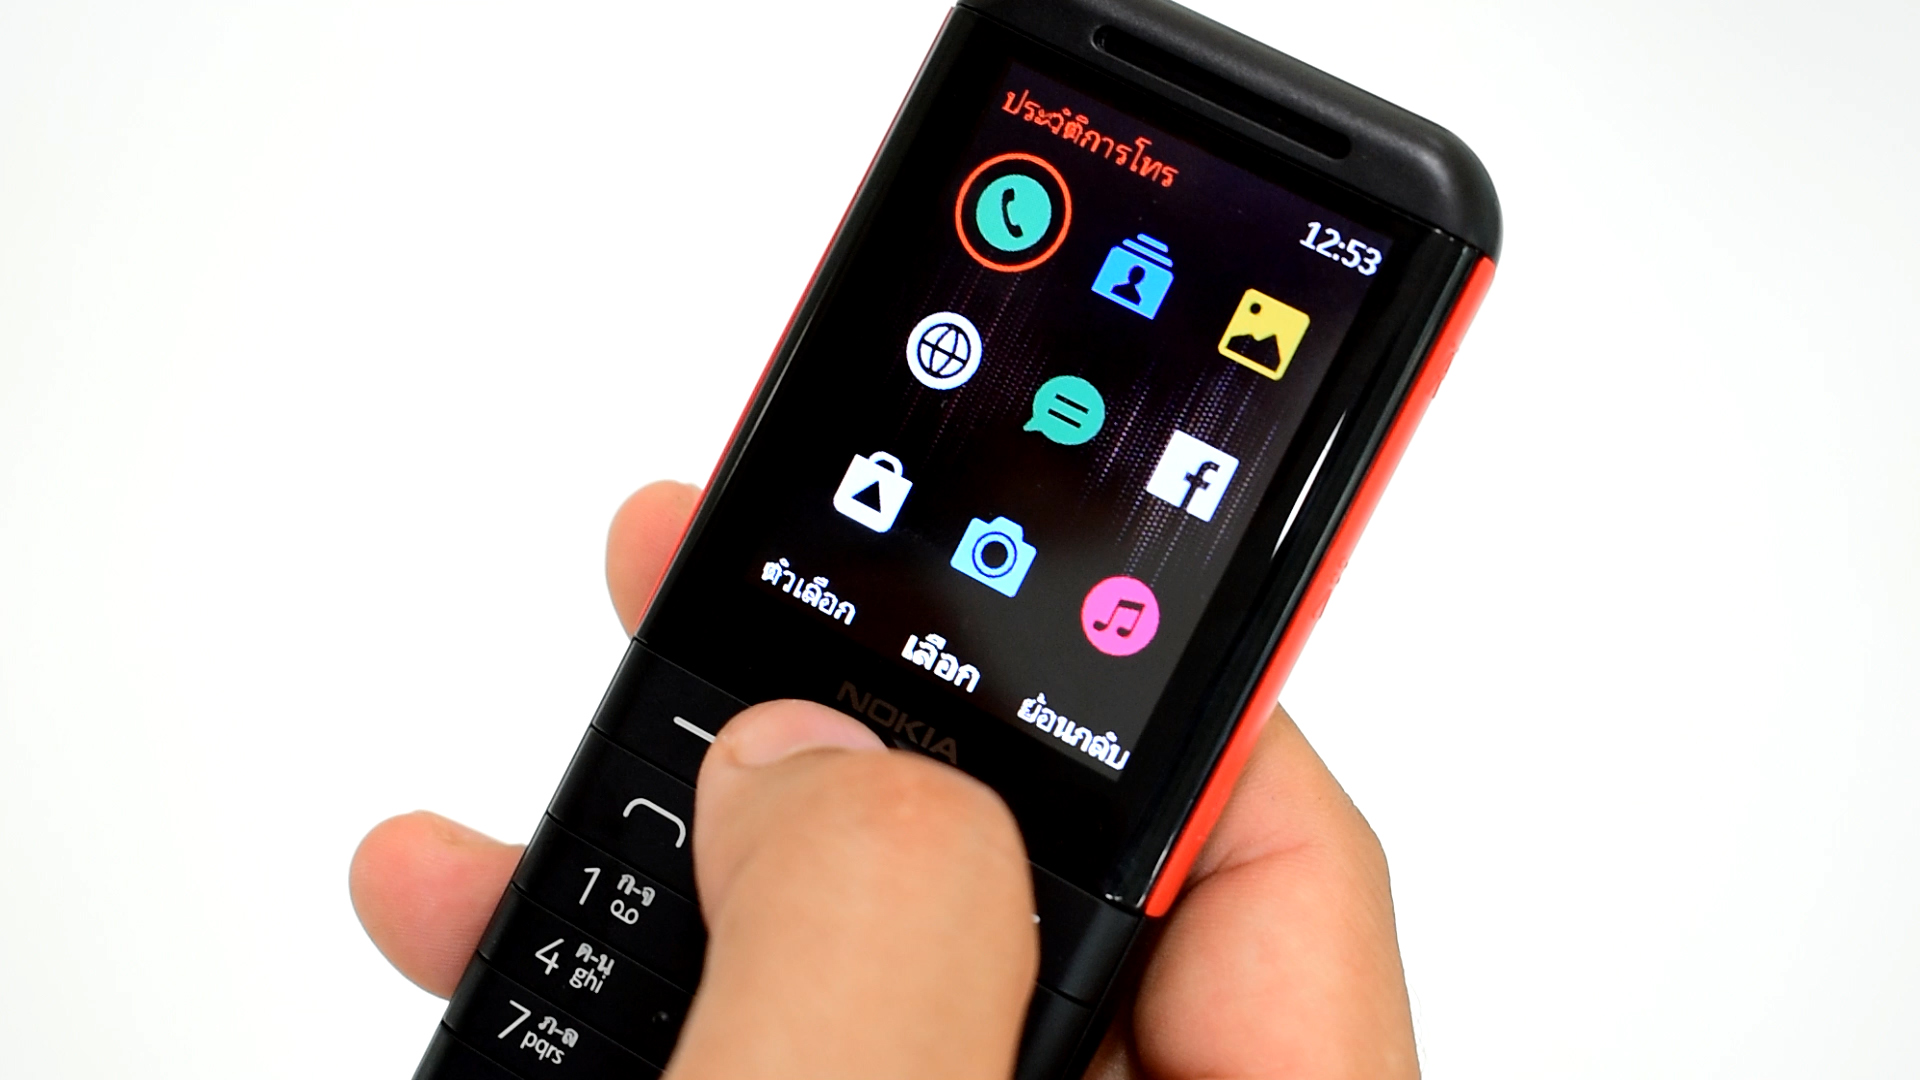 มือถือปุ่มกด Nokia 5310 เมนูดูง่าย